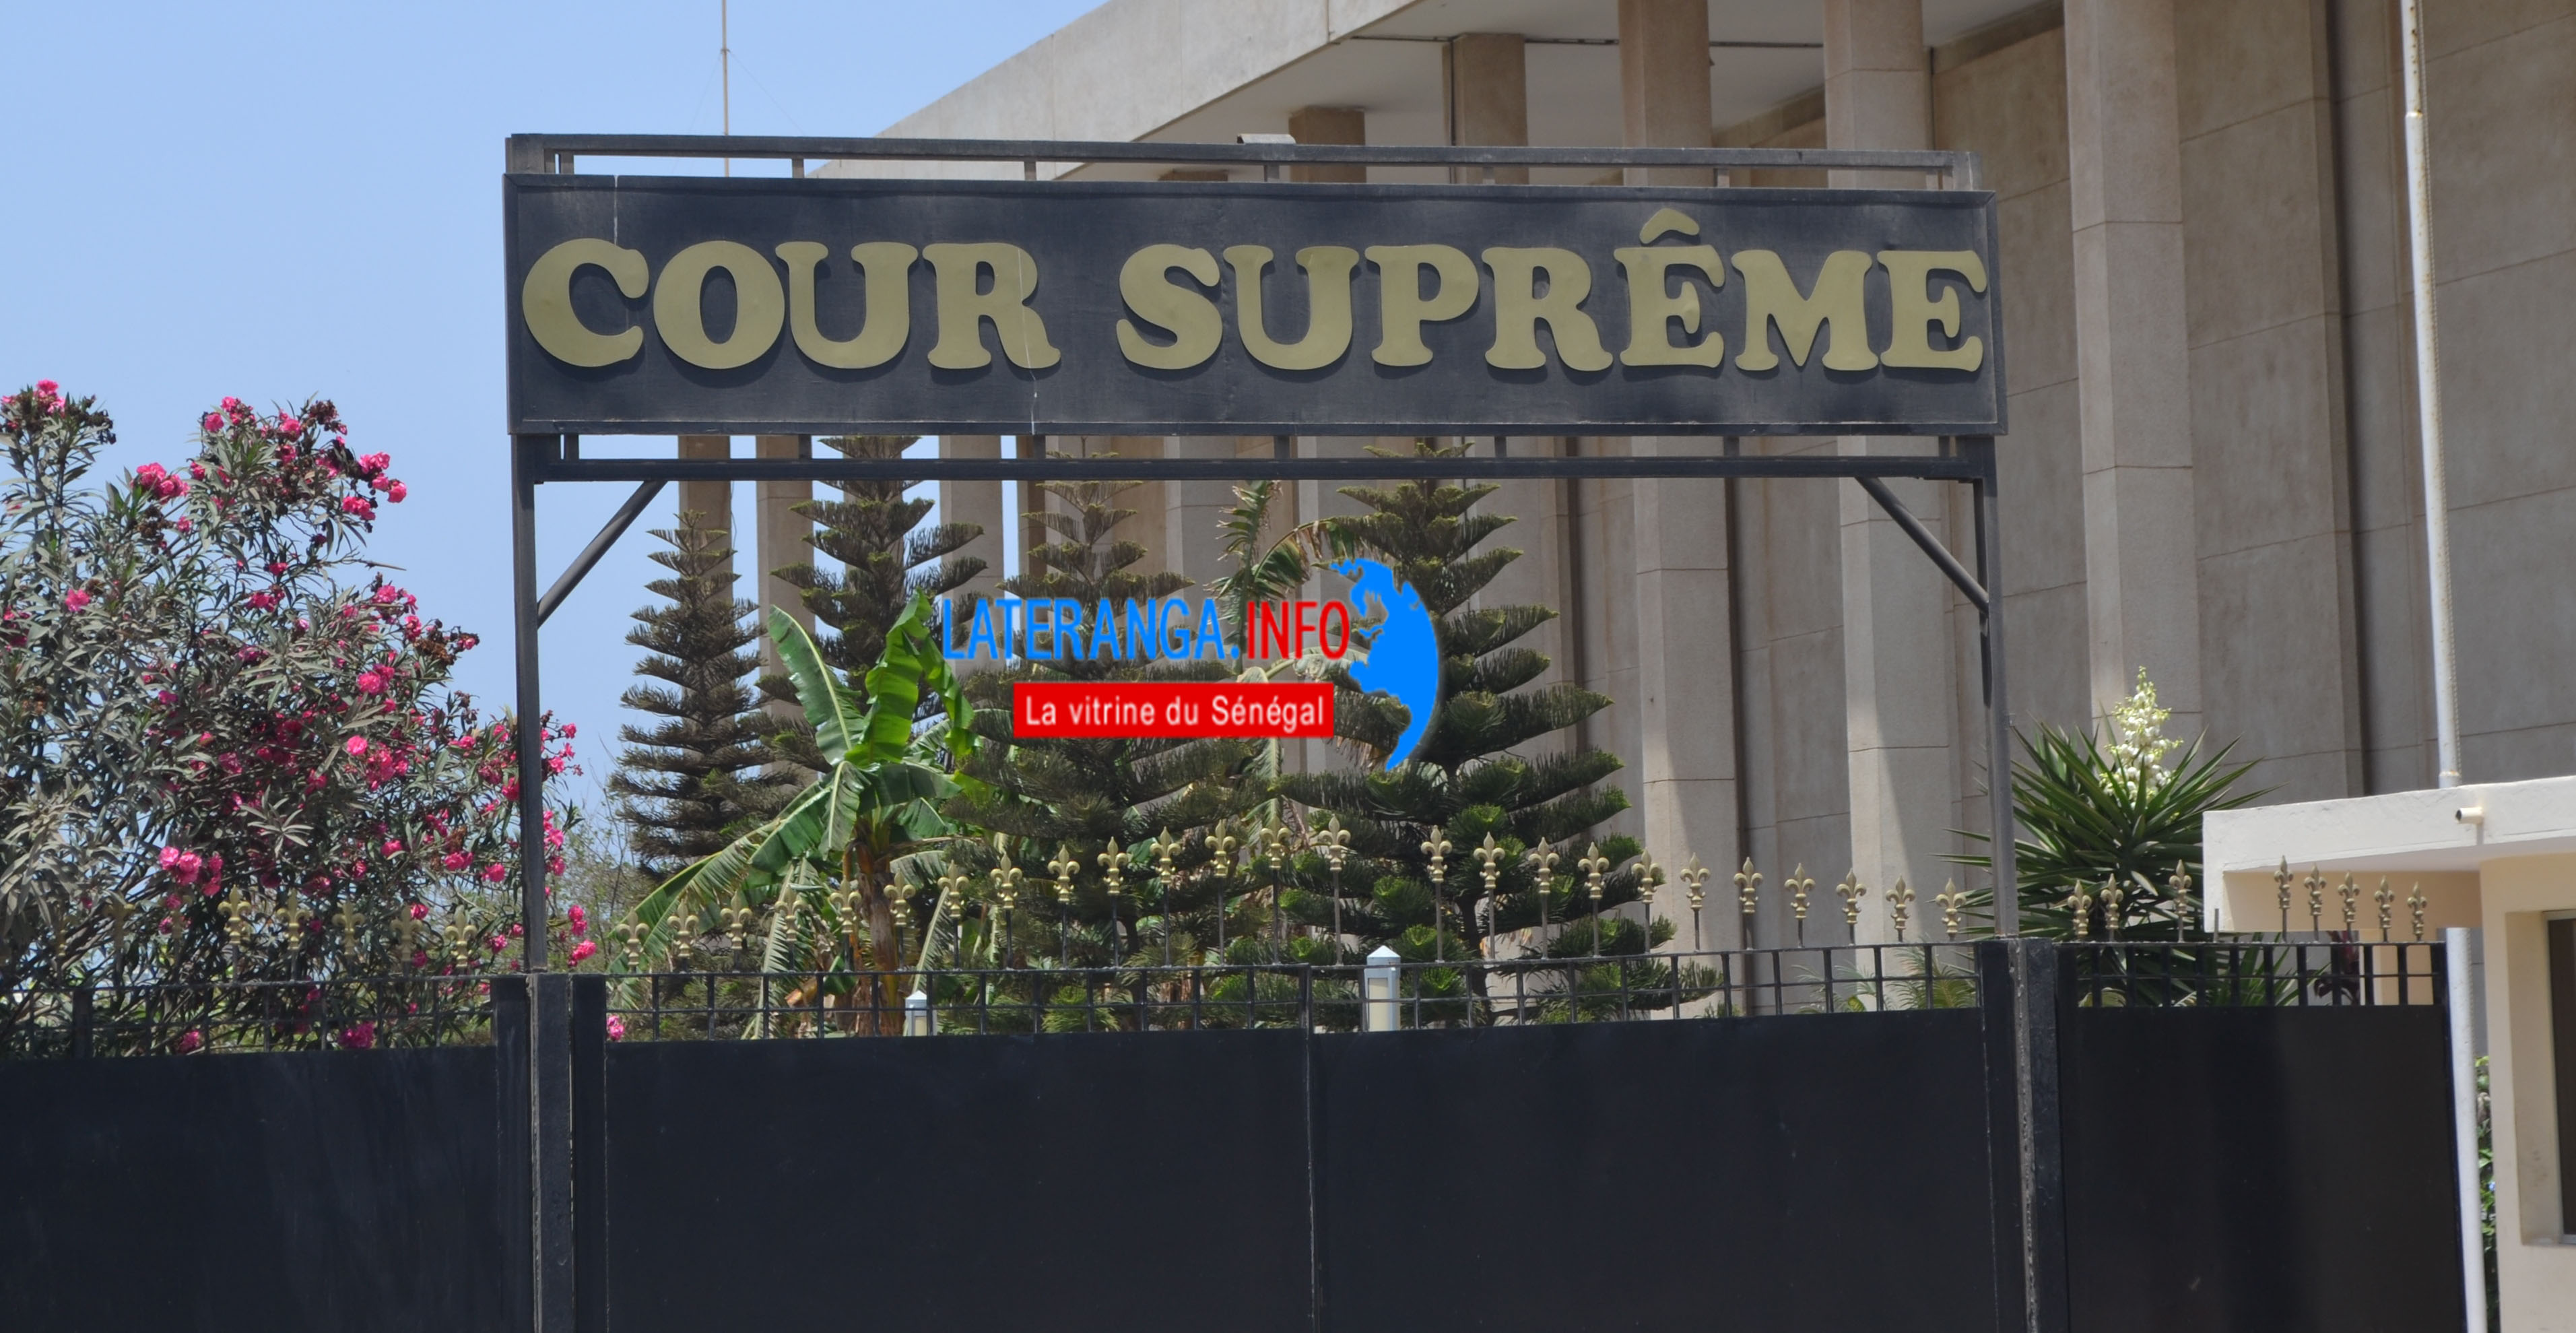 Refus de fiche de parrainage à SONKO, la Cour suprême saisie